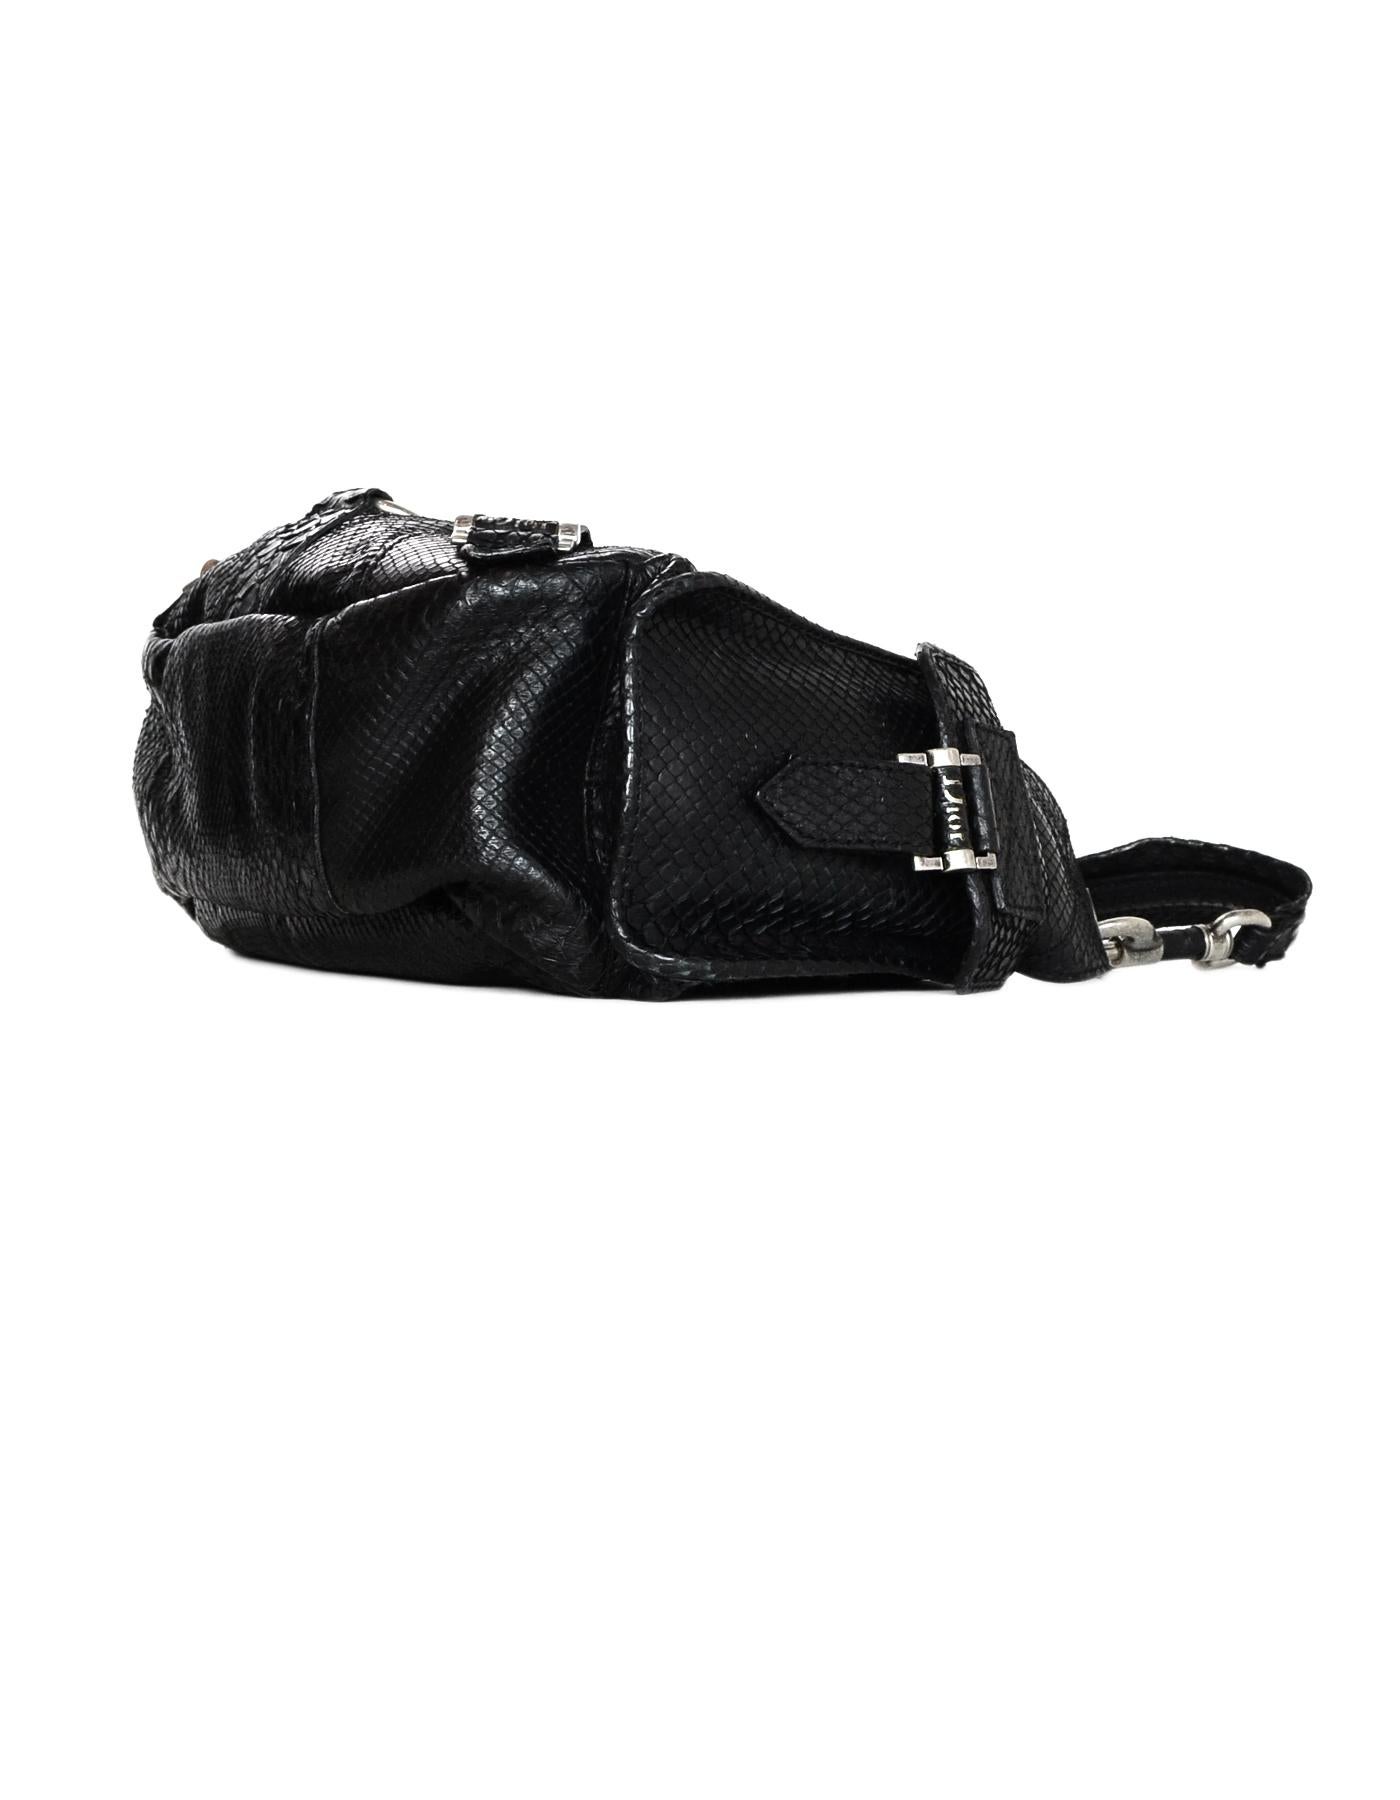 Christian Dior Limited Edition Black Python Shoulder Bag w/ Side Pockets 1